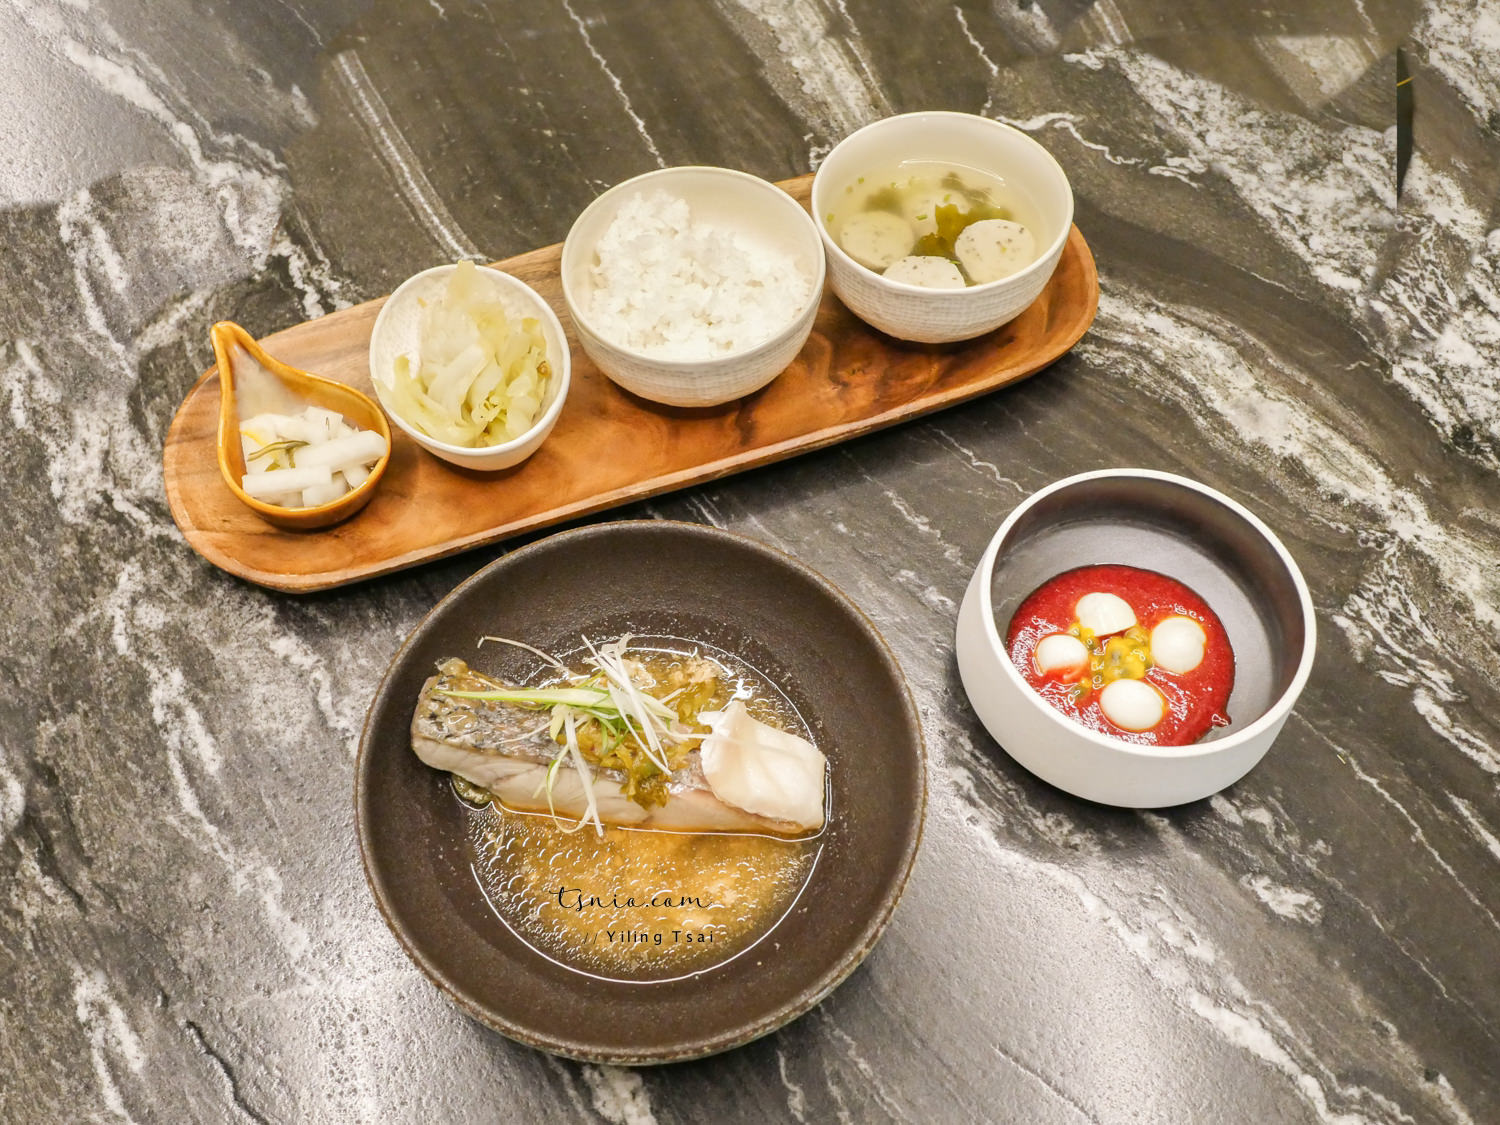 台北美食 Hi-Q 鱻食 褐藻主題健康料理火鍋 京華城旁隱藏版餐廳推薦